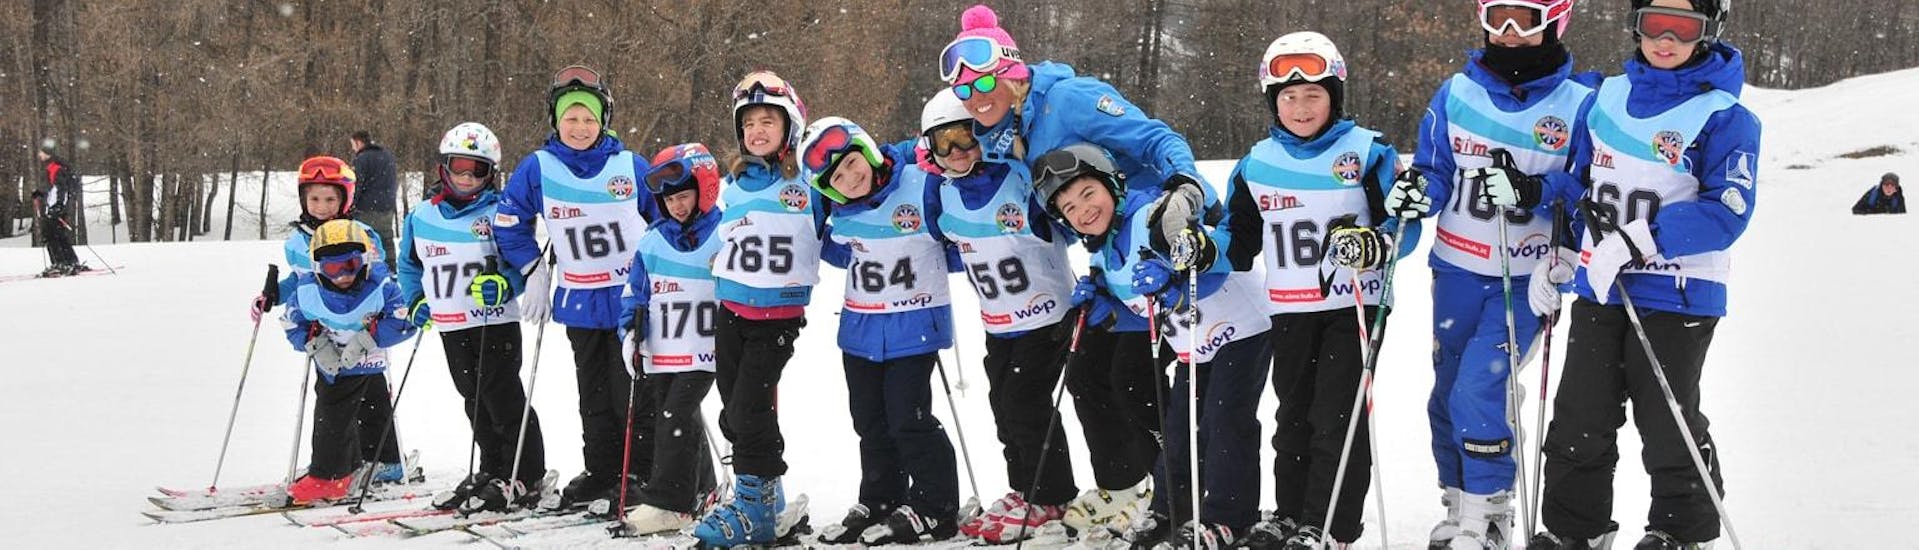 Un groupe de petits skieurs lors de leur Cours de ski pour Enfants (4-14 ans) - Haute-Saison - Avancé organisé par l'école de ski Scuola di Sci Bardonecchia.